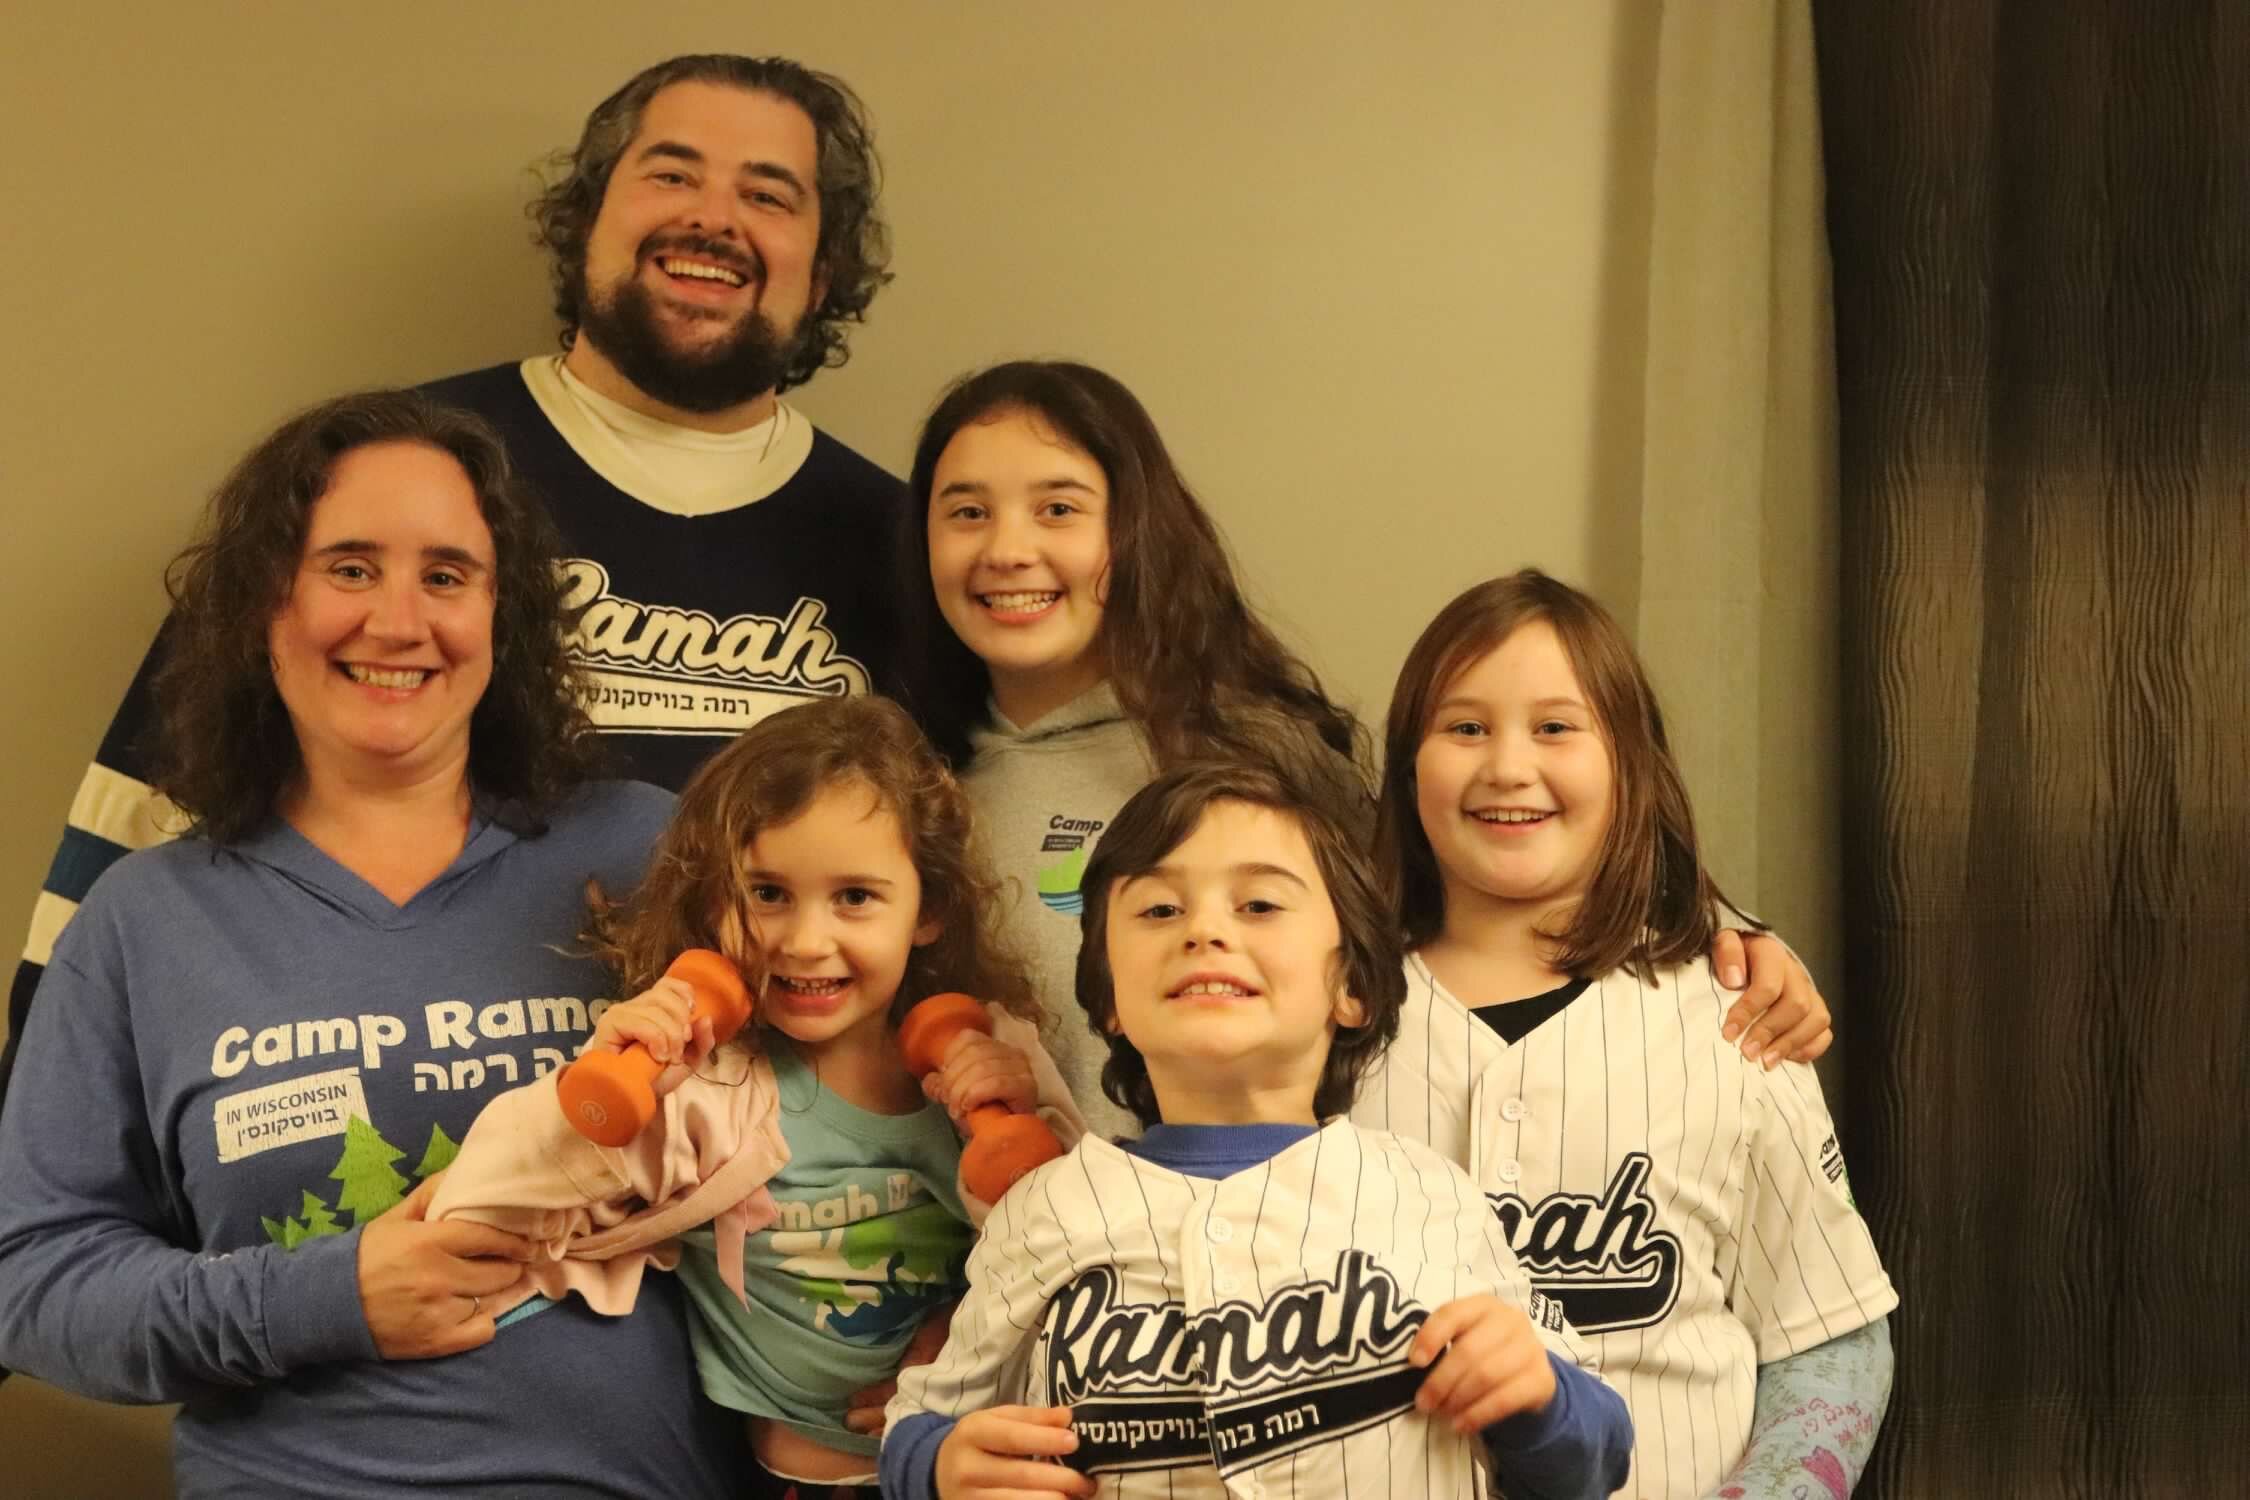 Scott and Family, Ramah T-Shirt Day 2017